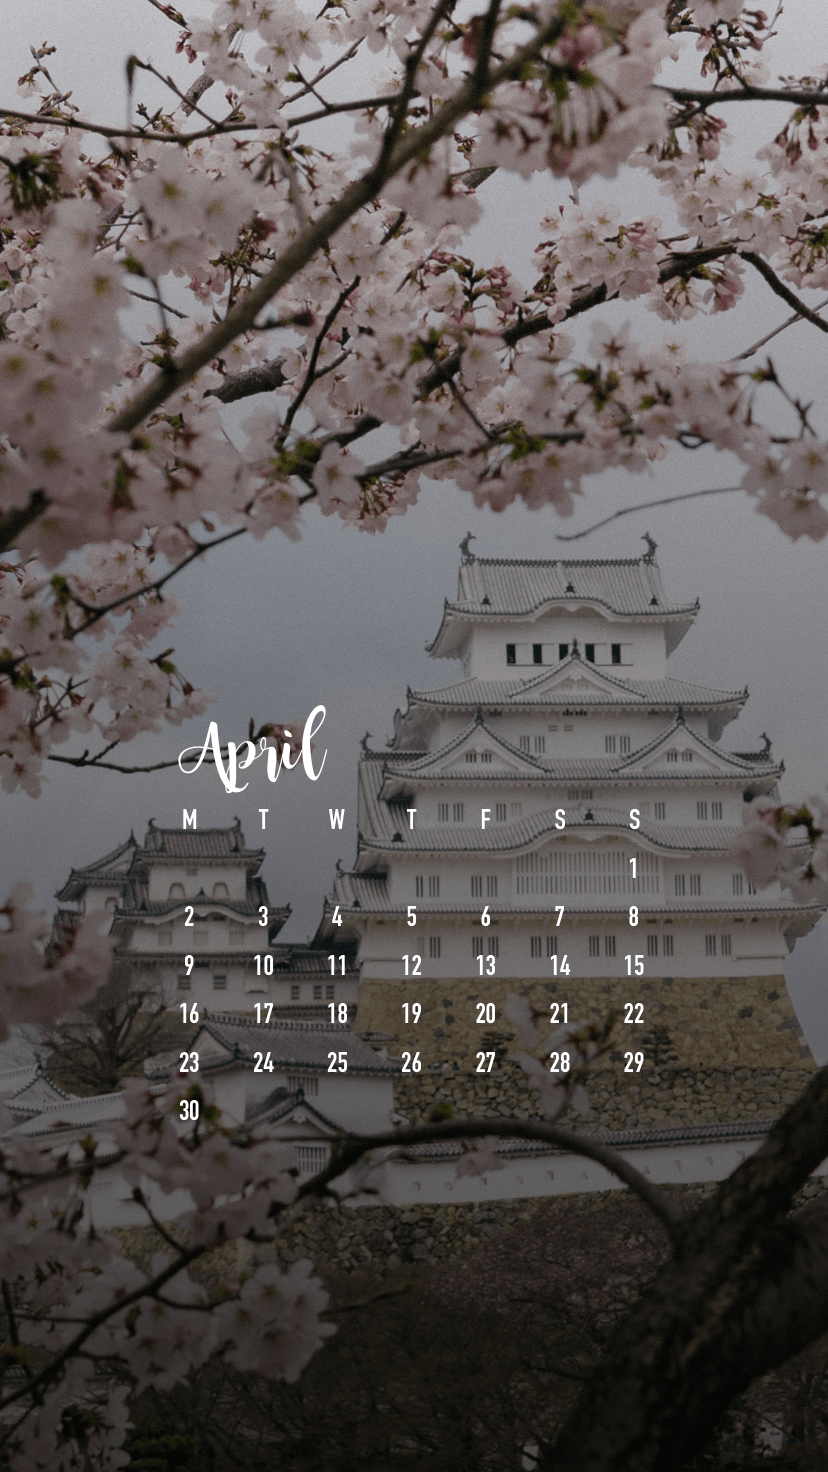 April 2018 Smartphone Wallpaper Calendar Download. Calendar 2018